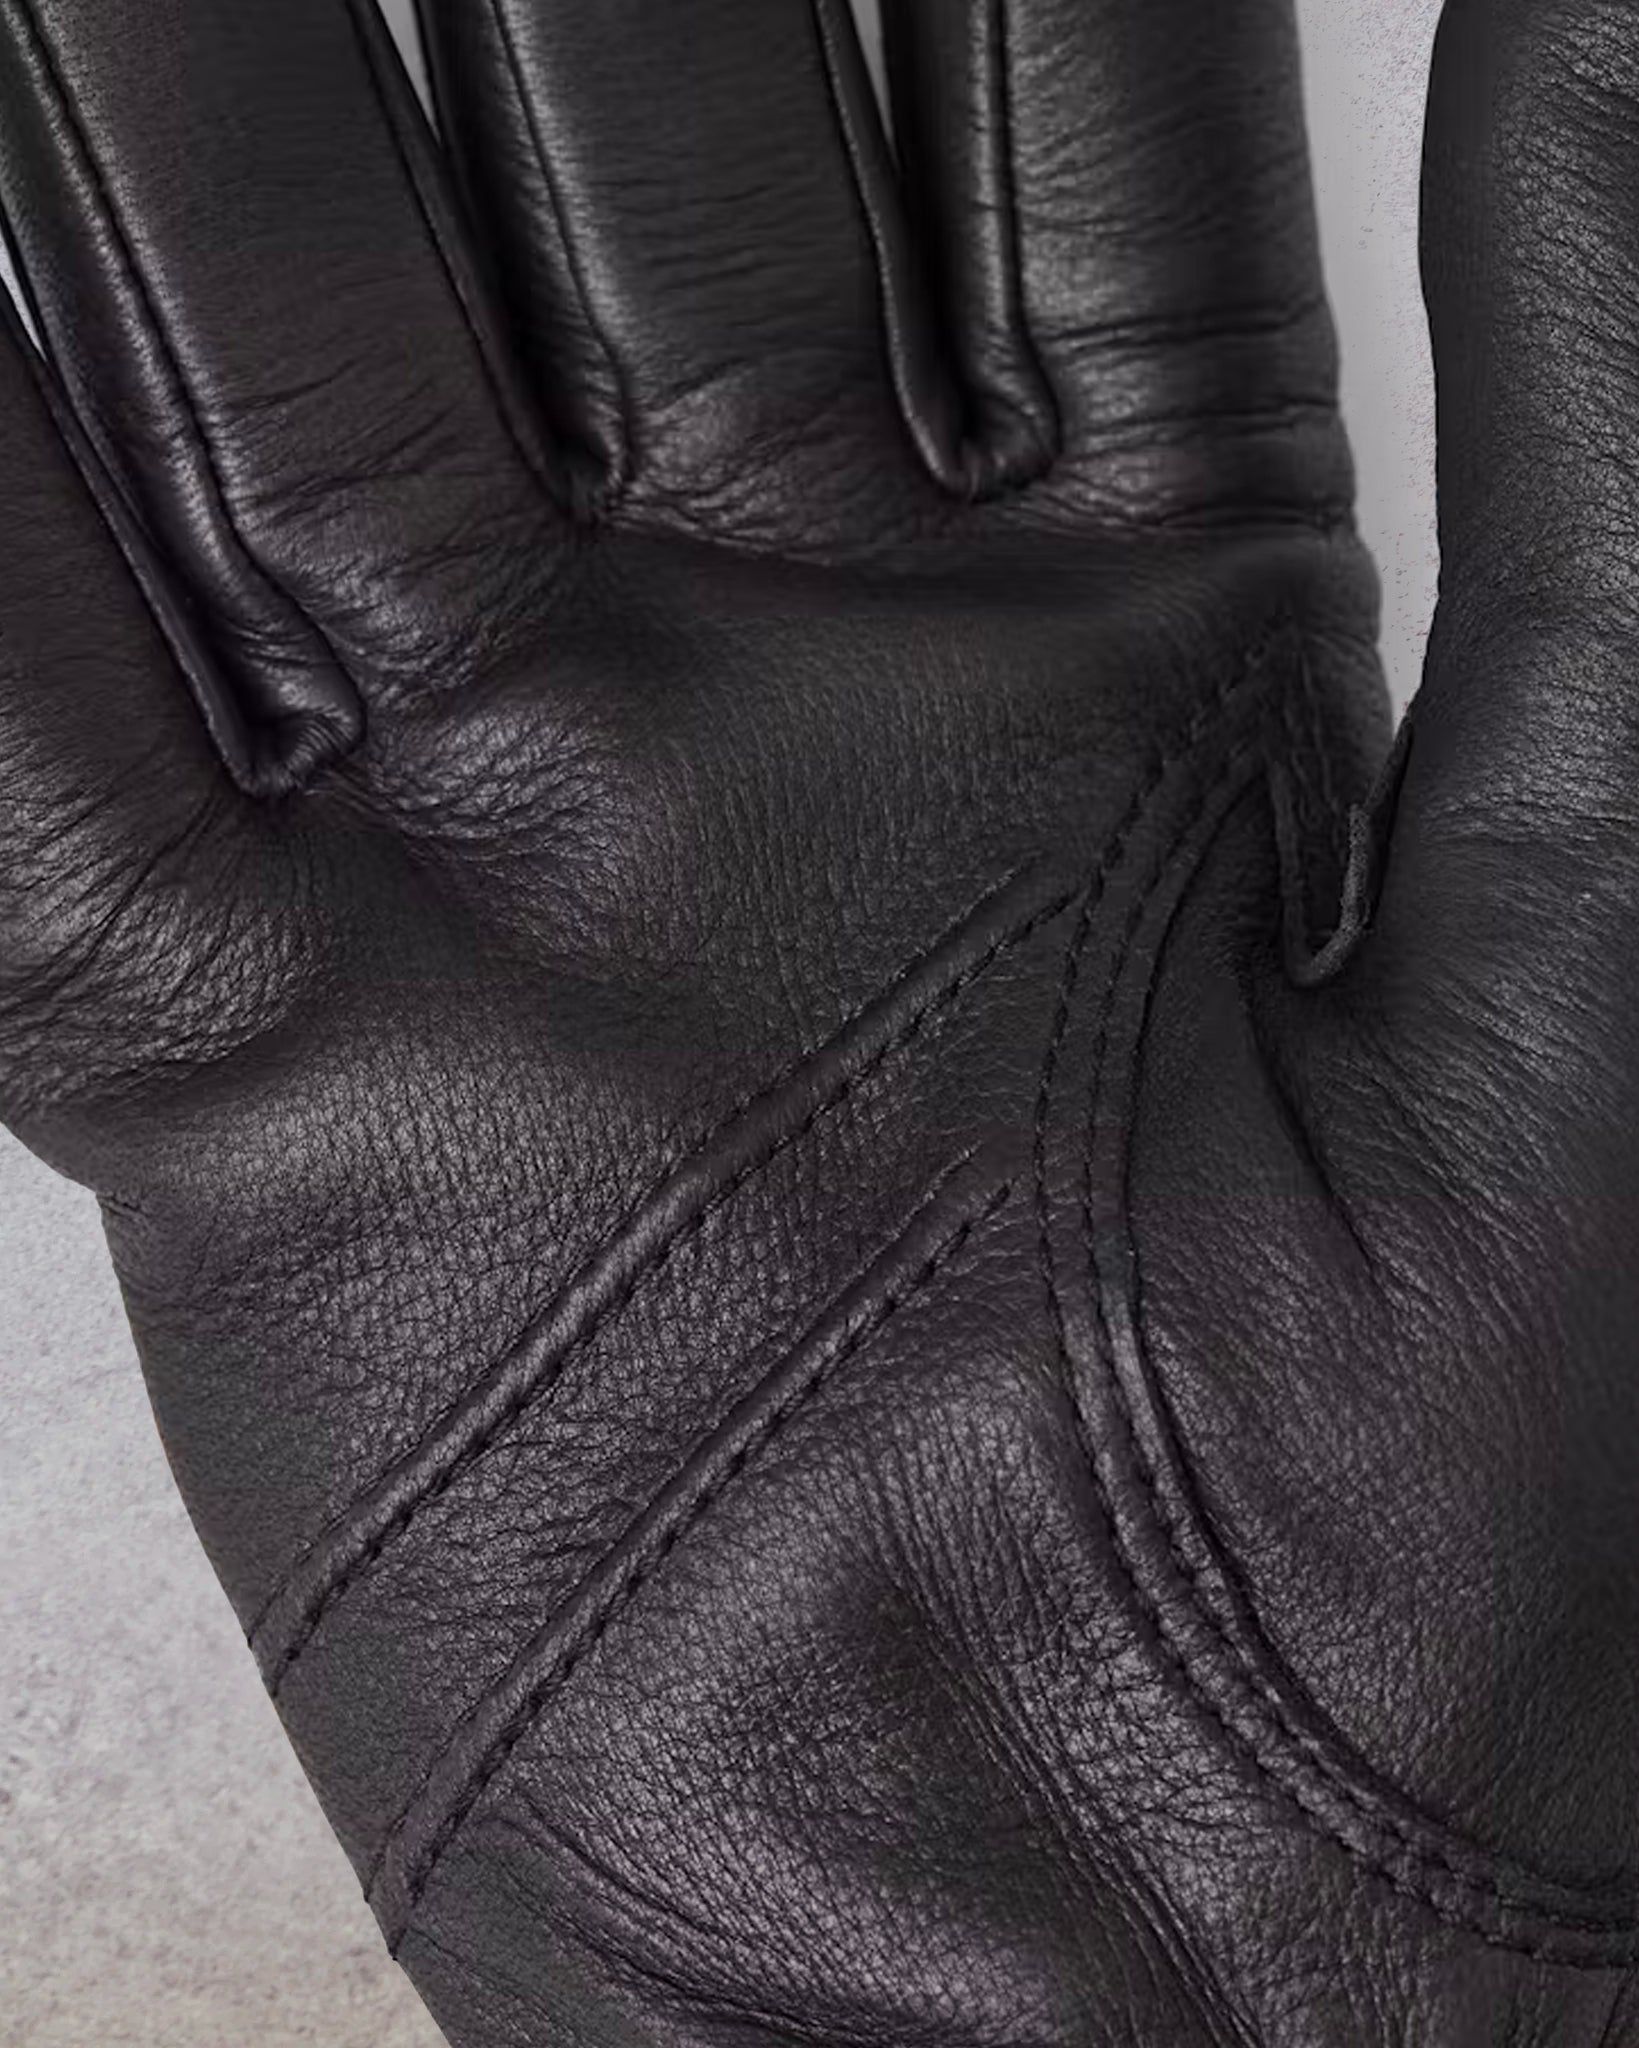 Hestra Andrew Gloves, Black